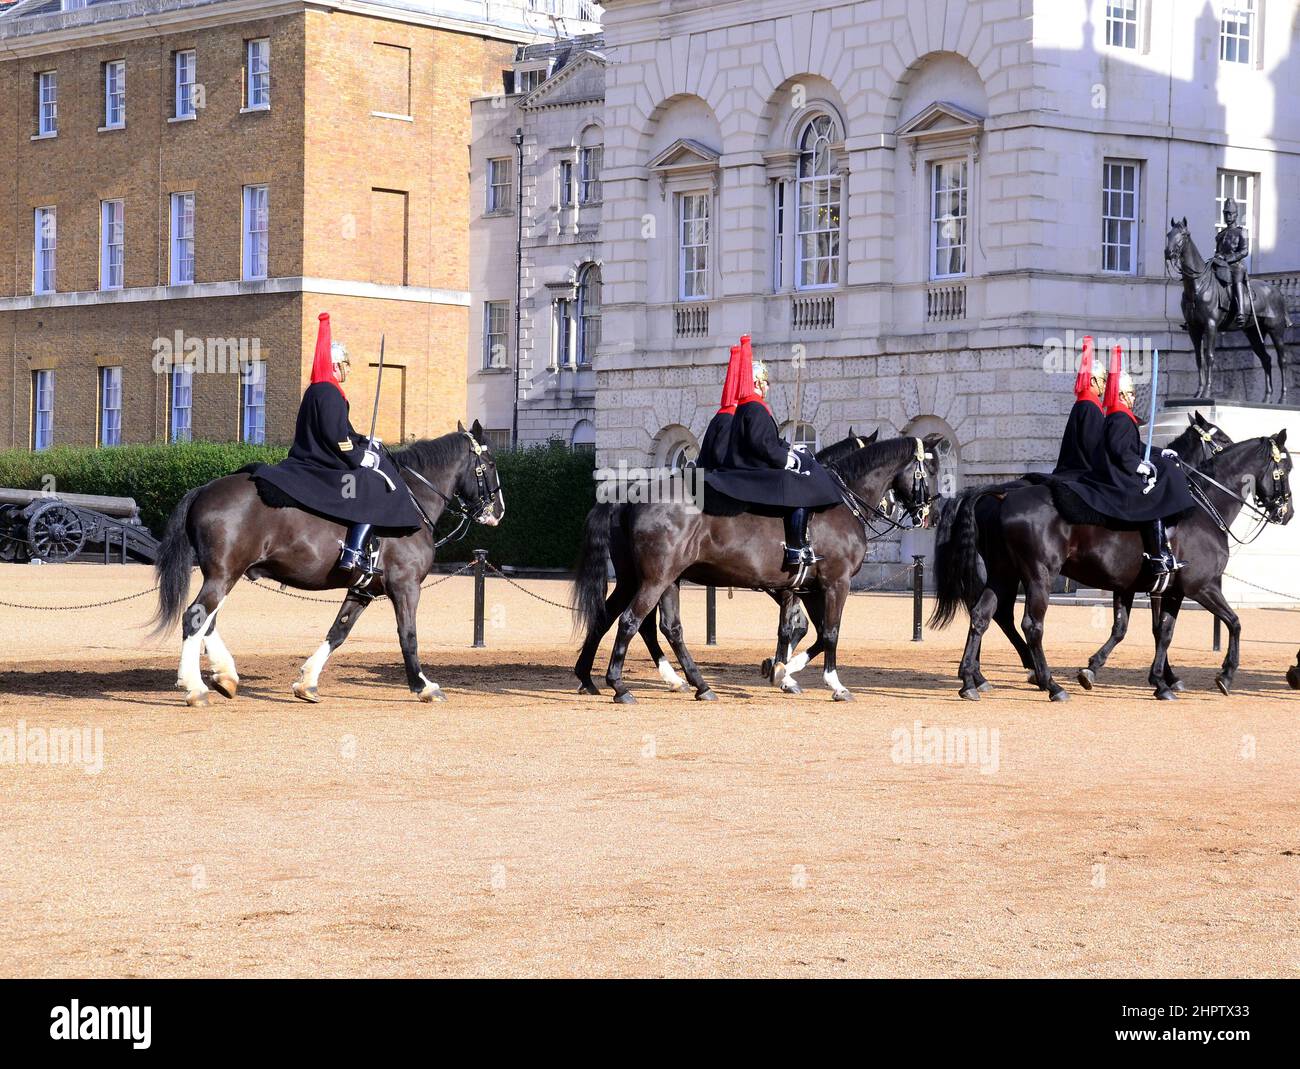 La cérémonie de changement de la Queen's Life Guard à l'occasion de la parade des gardes à cheval, Londres, Royaume-Uni. Soldats du régiment de cavalerie de la maison, des Bleus et des Royals. Banque D'Images